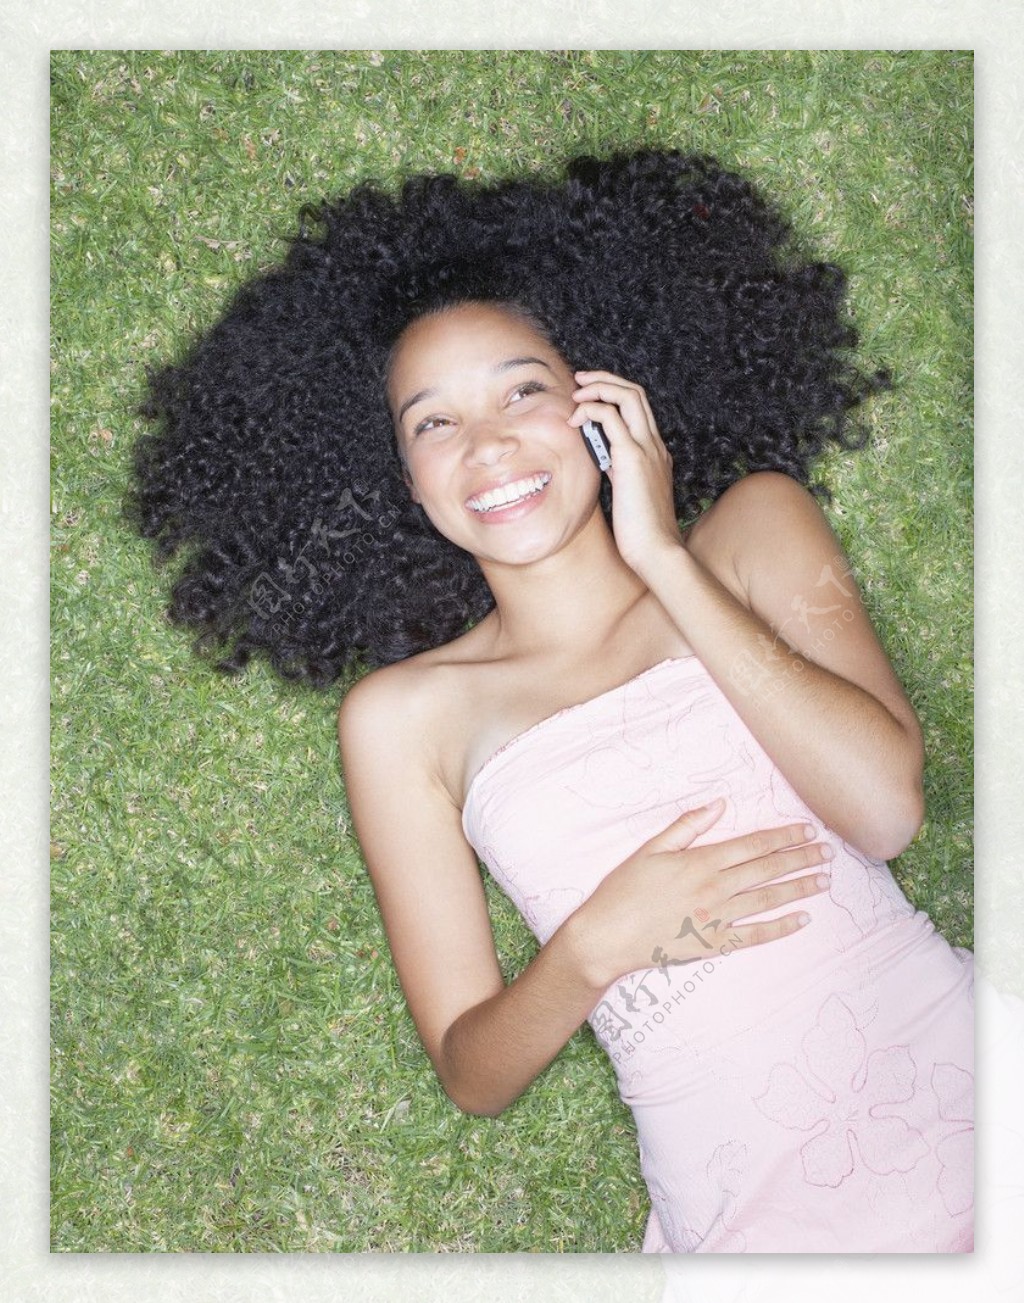 躺在草地上打电话的少女图片